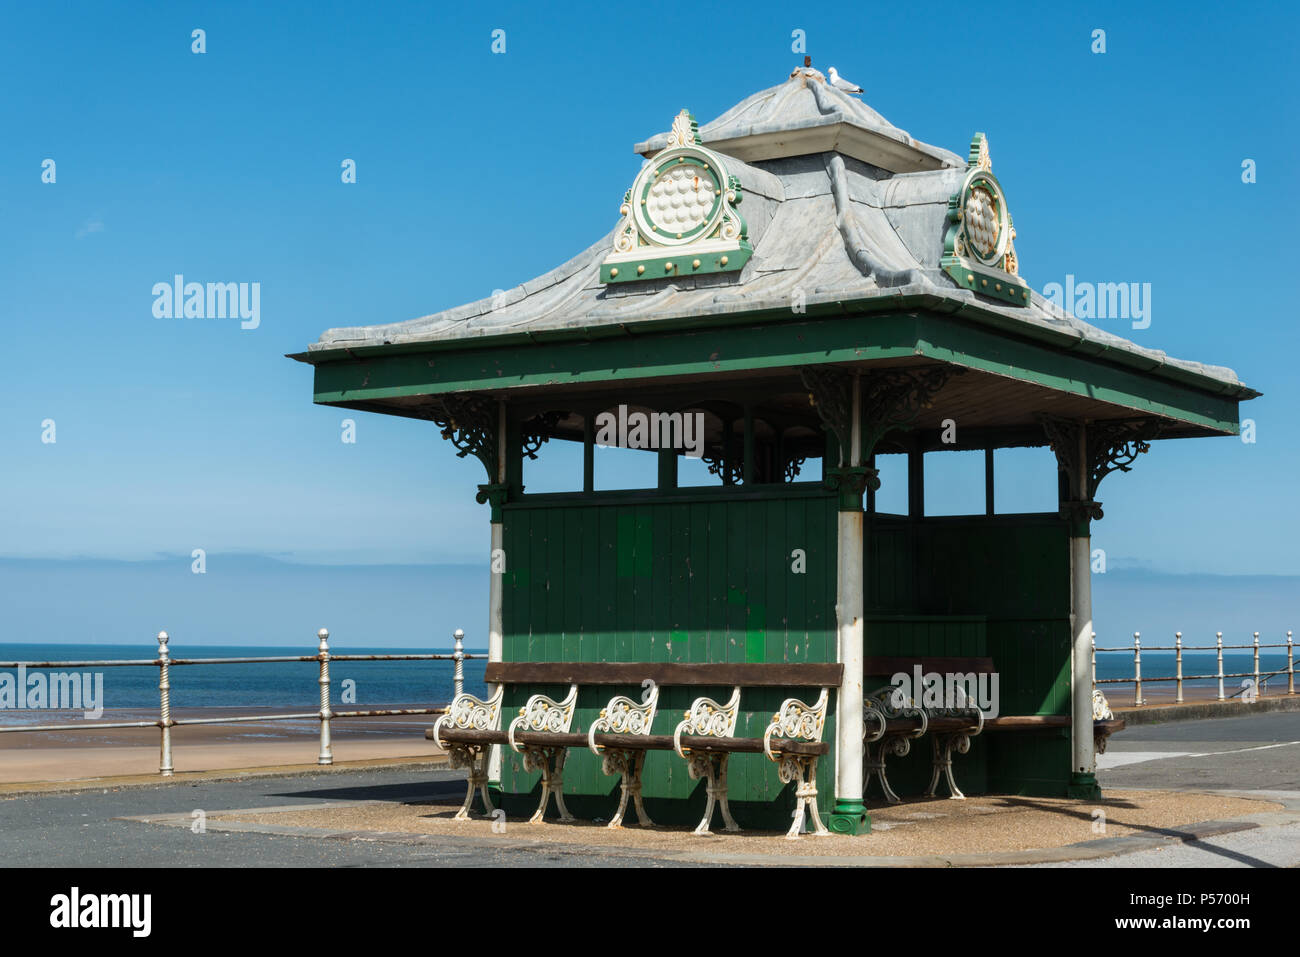 Verde storico rifugi costiere con panchine sul lungomare della località turistica di Blackpool, Lancashire, Inghilterra, Regno Unito Foto Stock